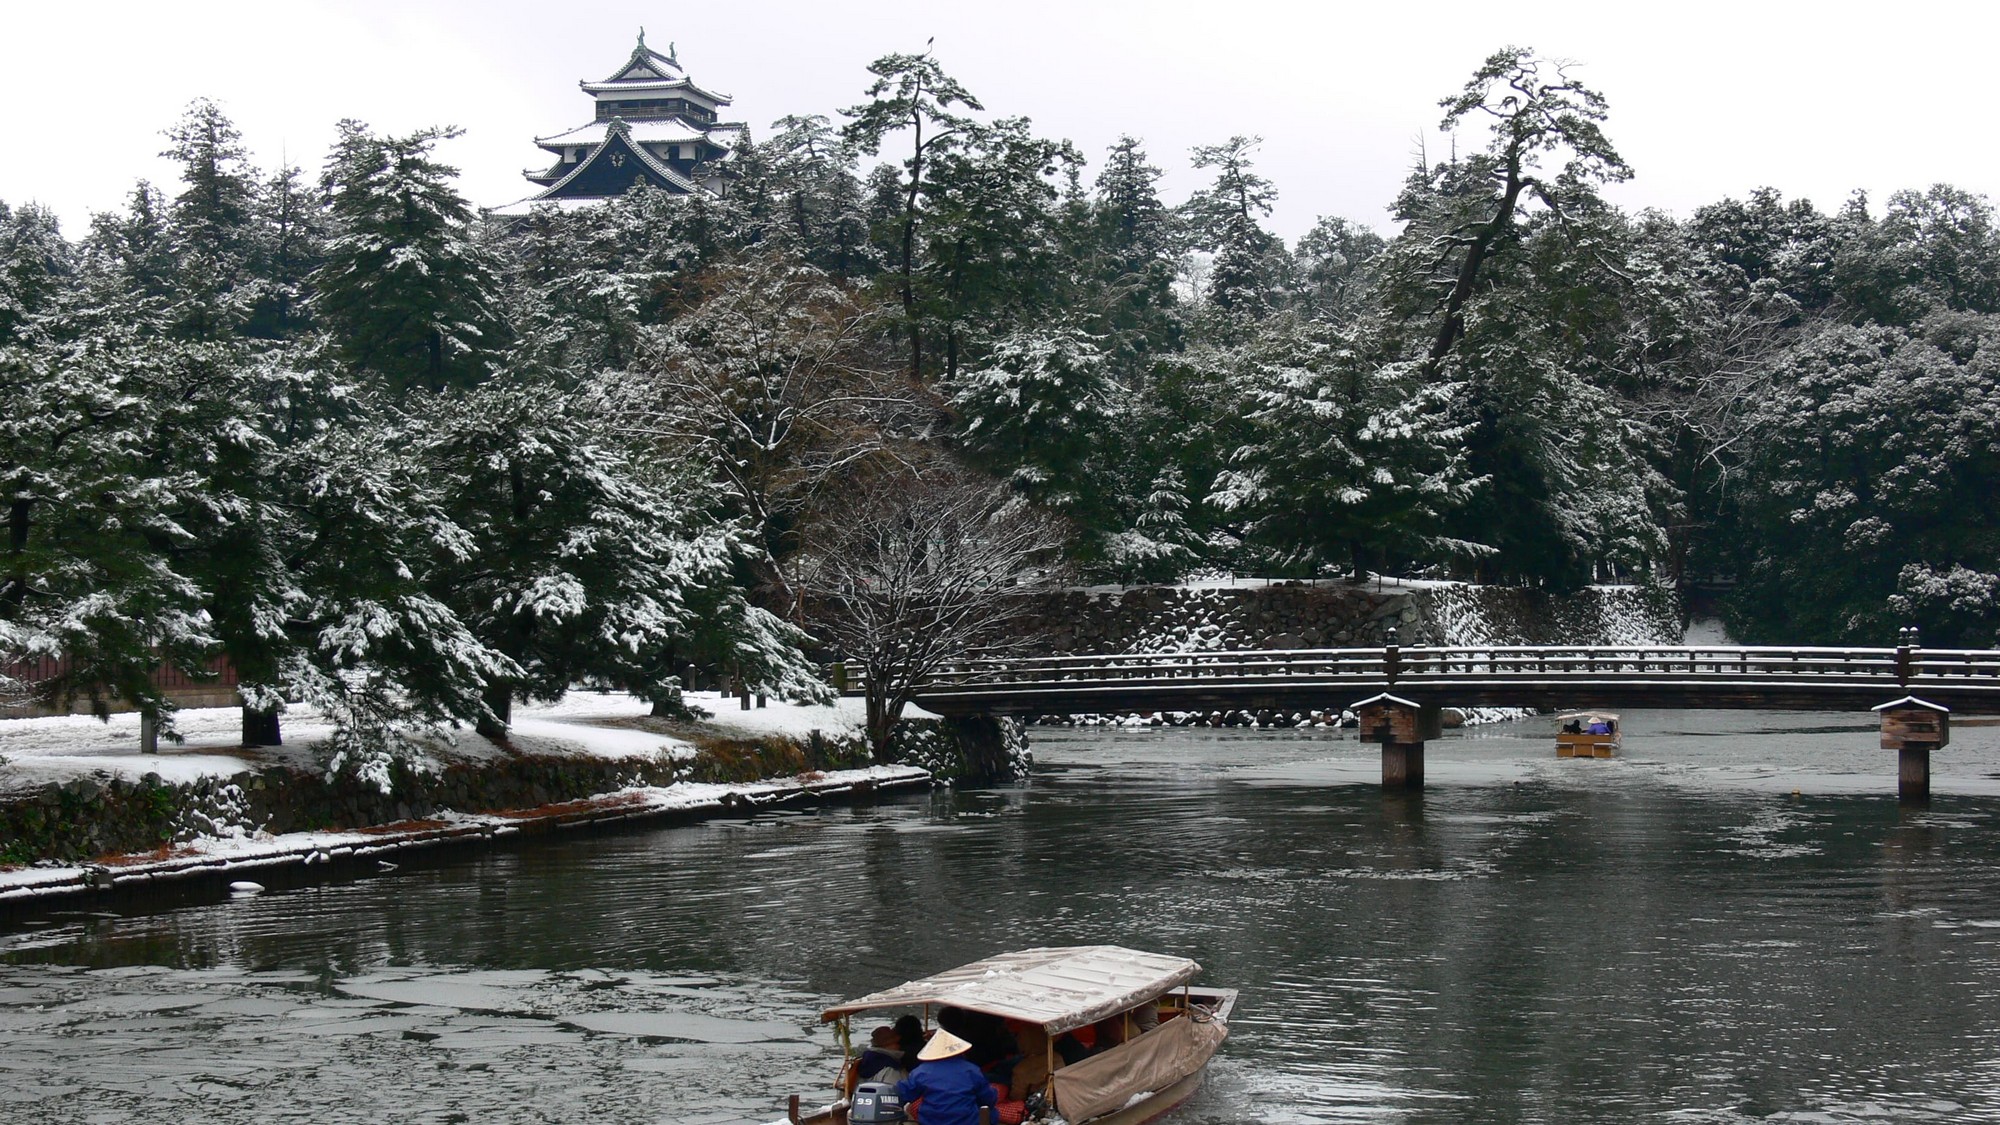 冬の風物詩として「こたつ船」を冬に運航しております。冬の松江城を遊覧船で散策。